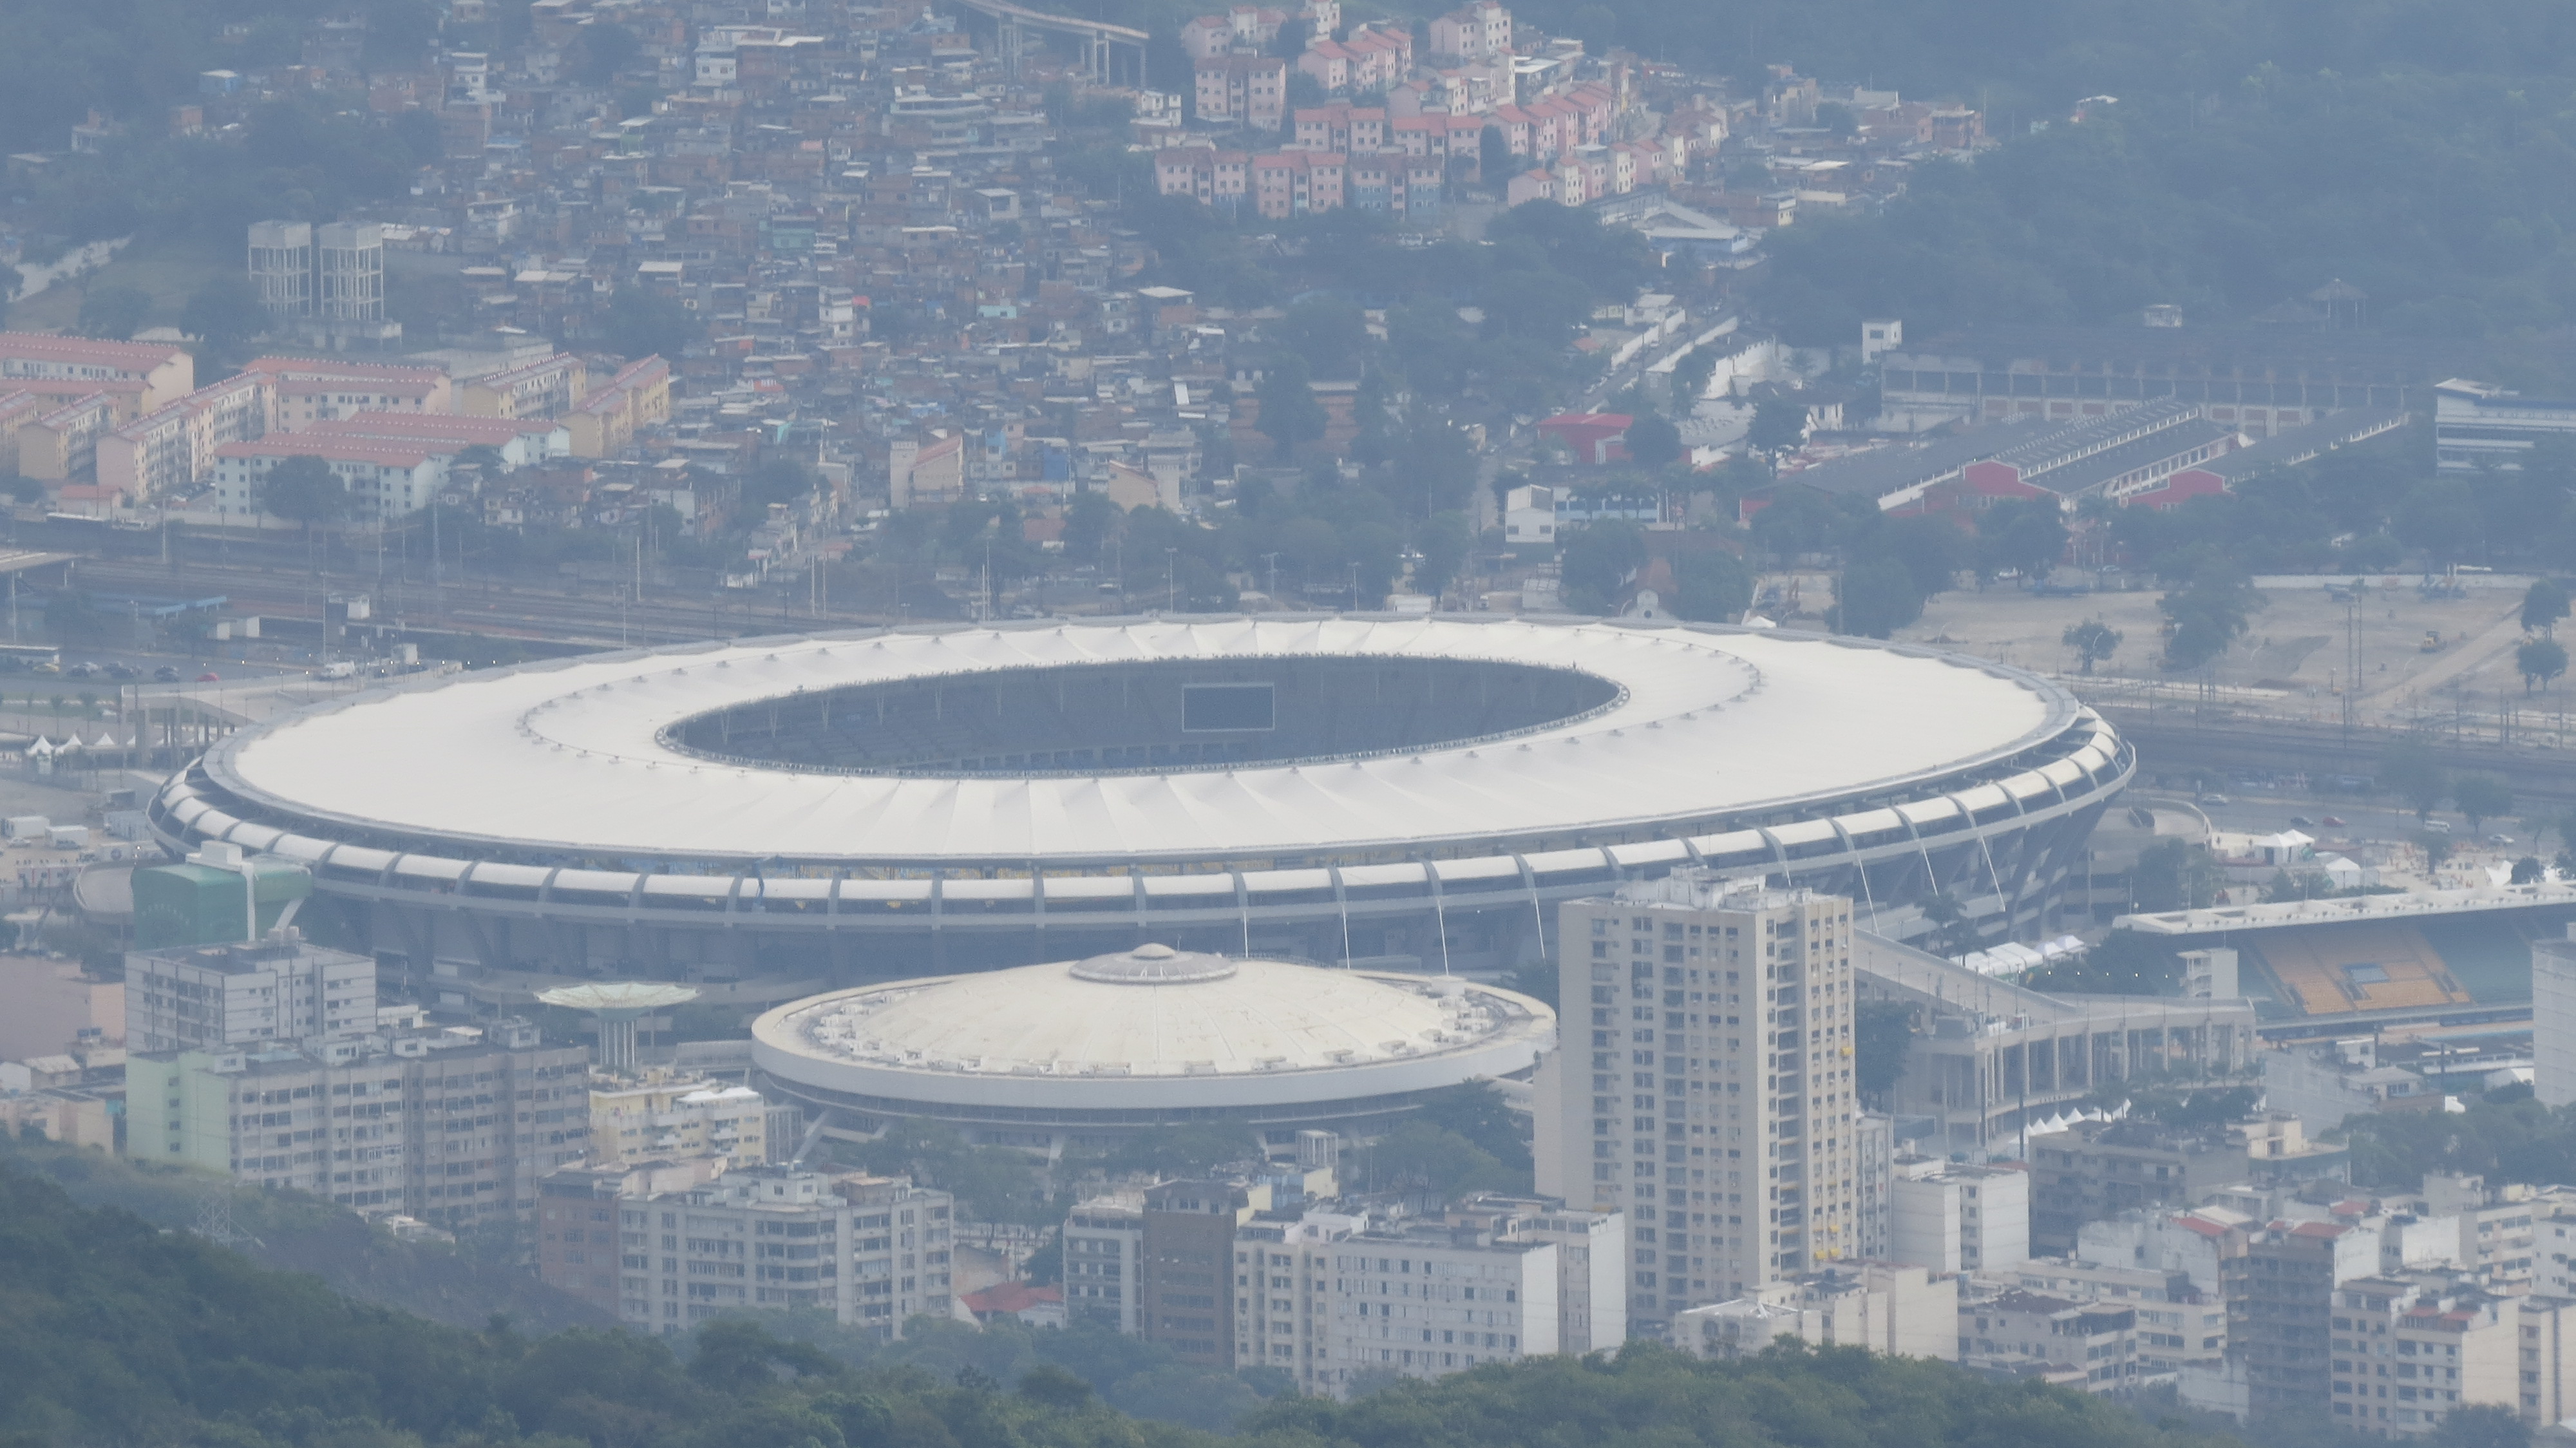 File:Brasil, Estadio, 1950-07-22 (375).jpg - Wikimedia Commons